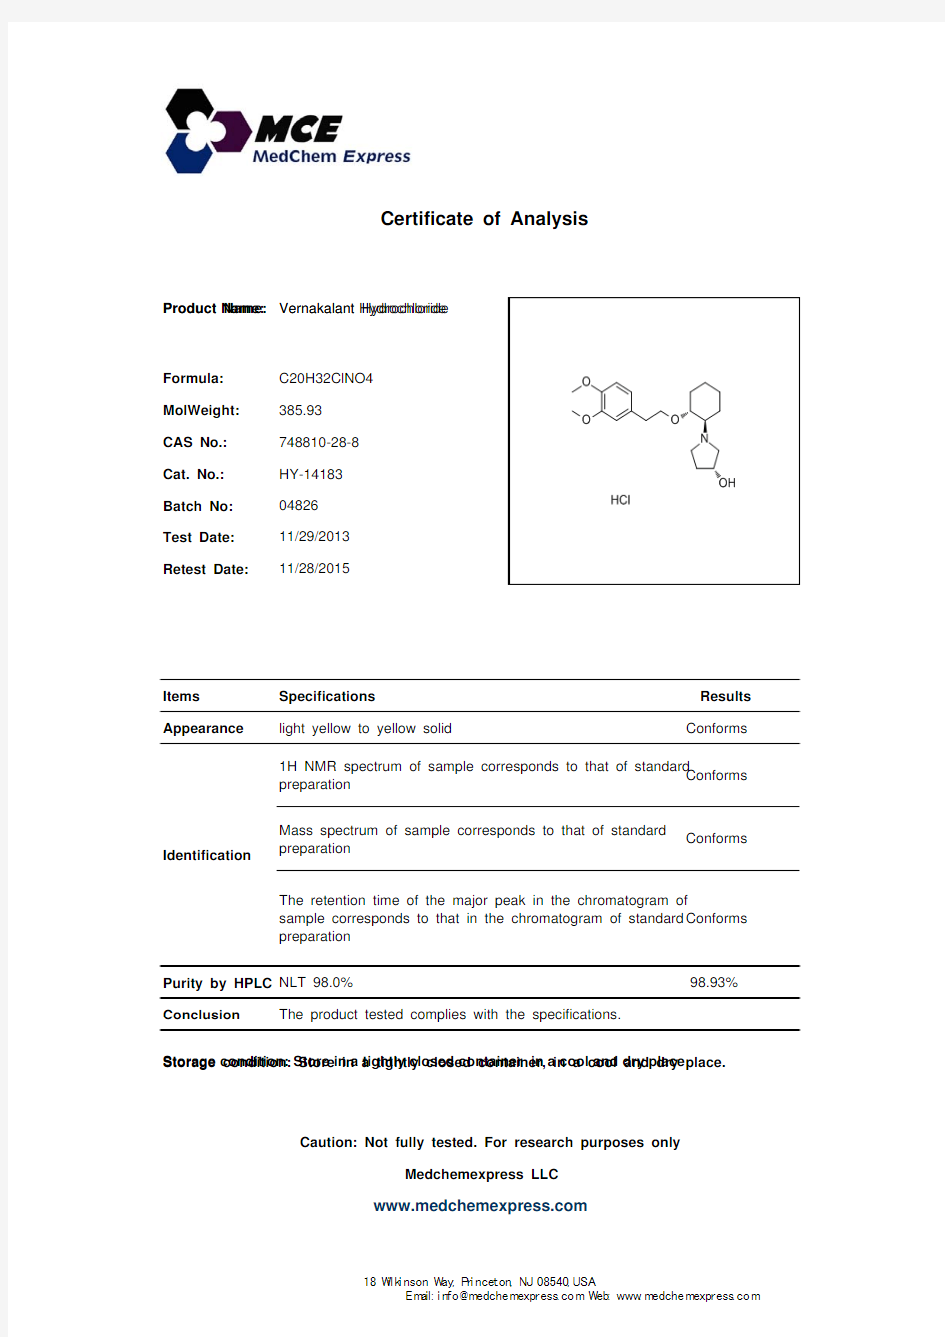 Vernakalant Hydrochloride_748810-28-8_CoA_MedChemExpress